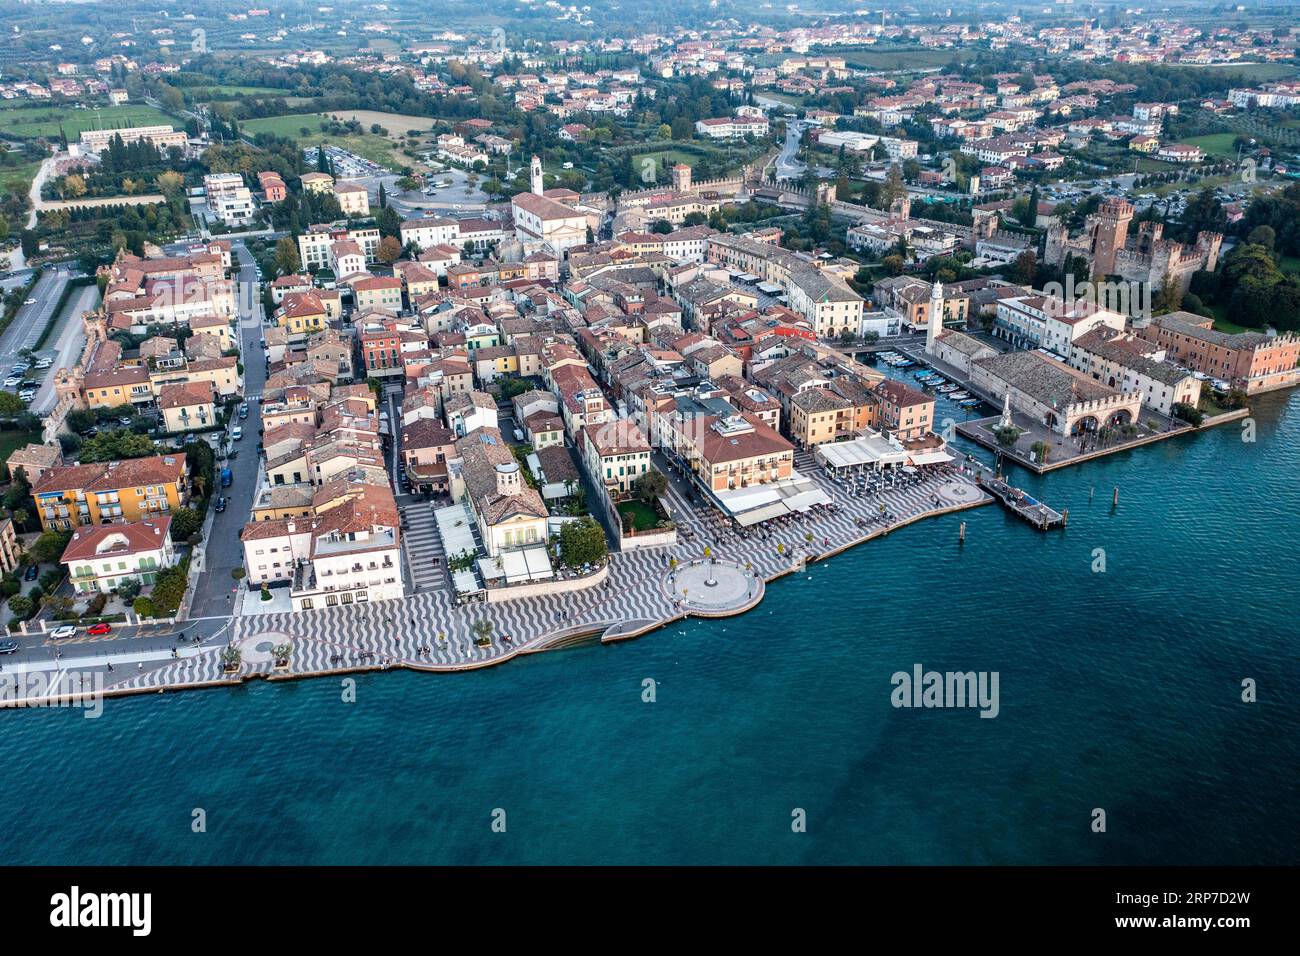 Vista aerea, Lazise con il centro storico, provincia di Verona, lago di Garda, Italia Foto Stock